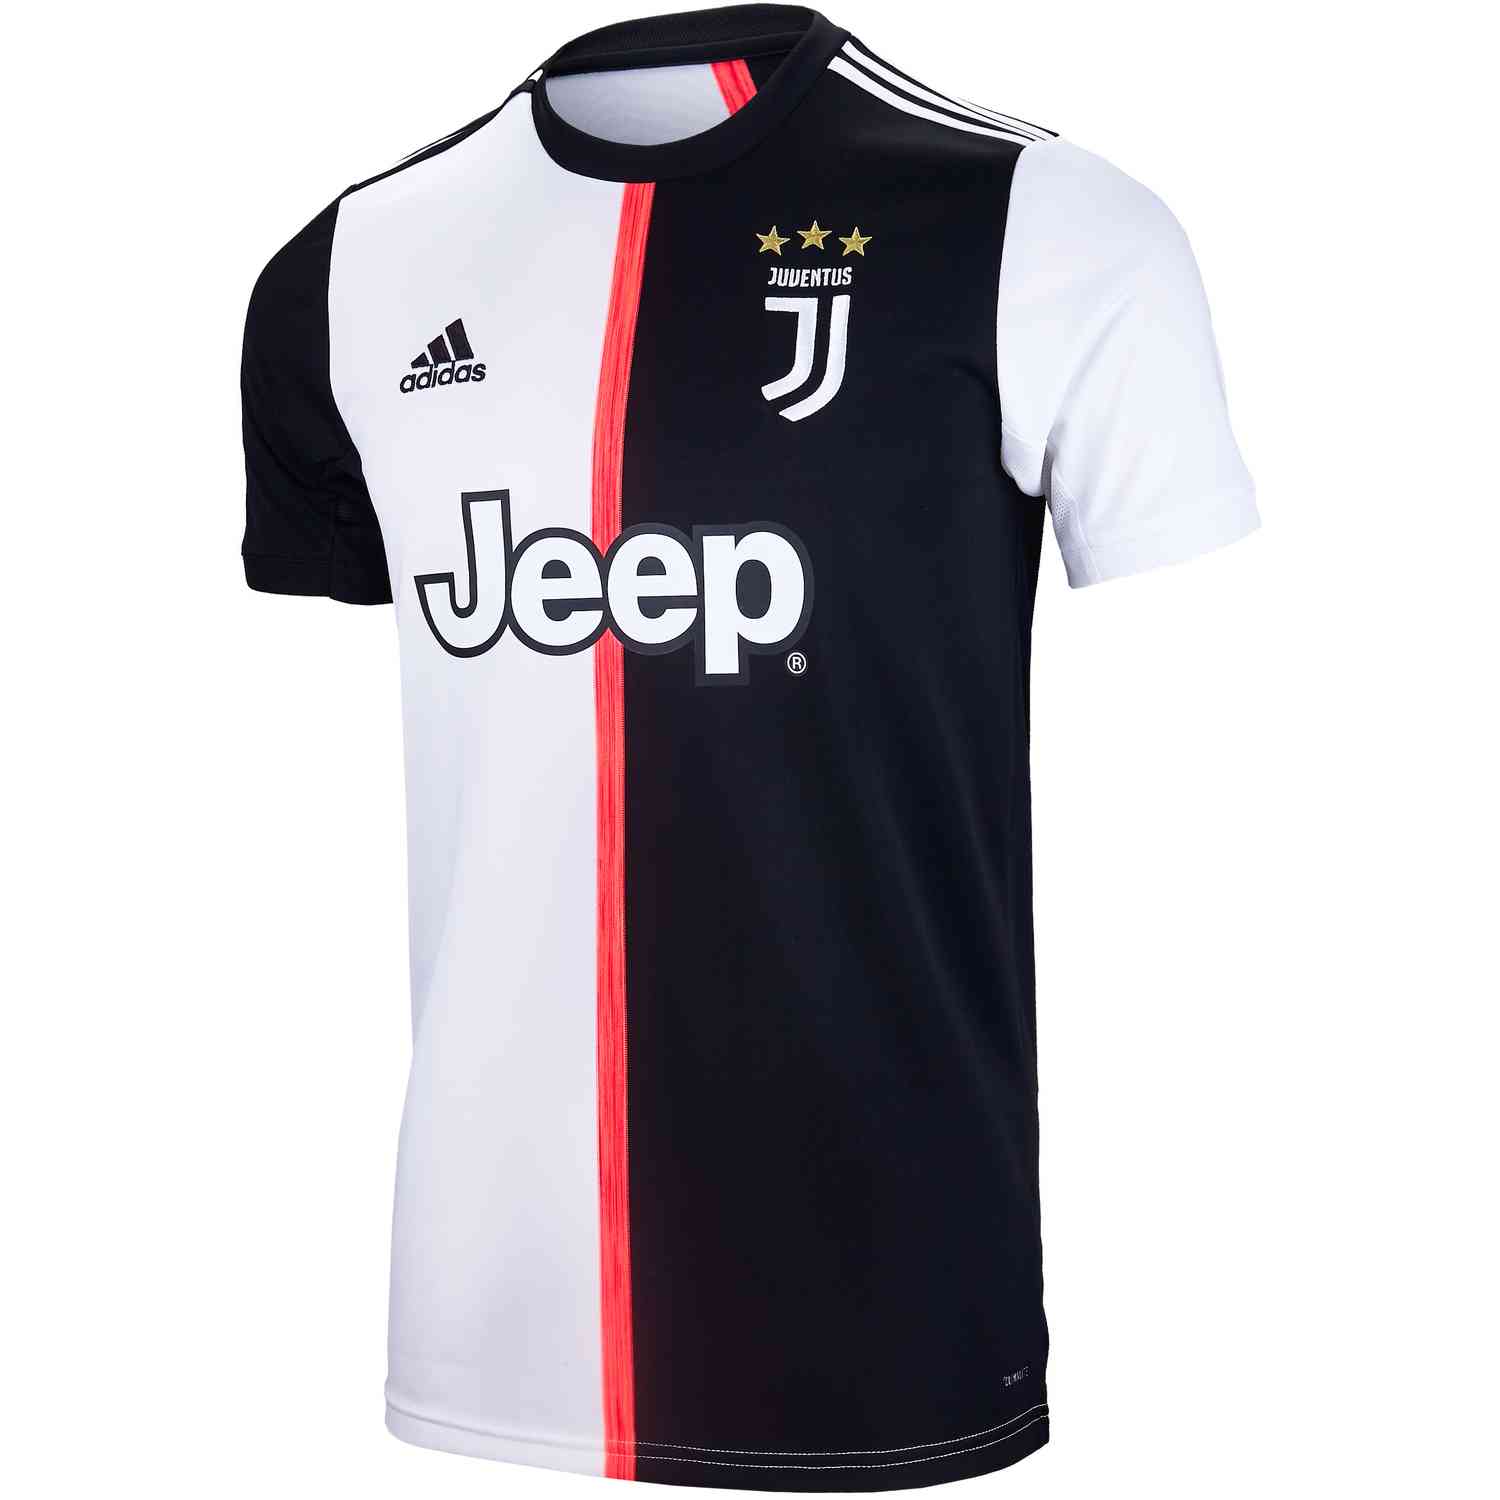 Adidas Juventus Home Jersey 201920